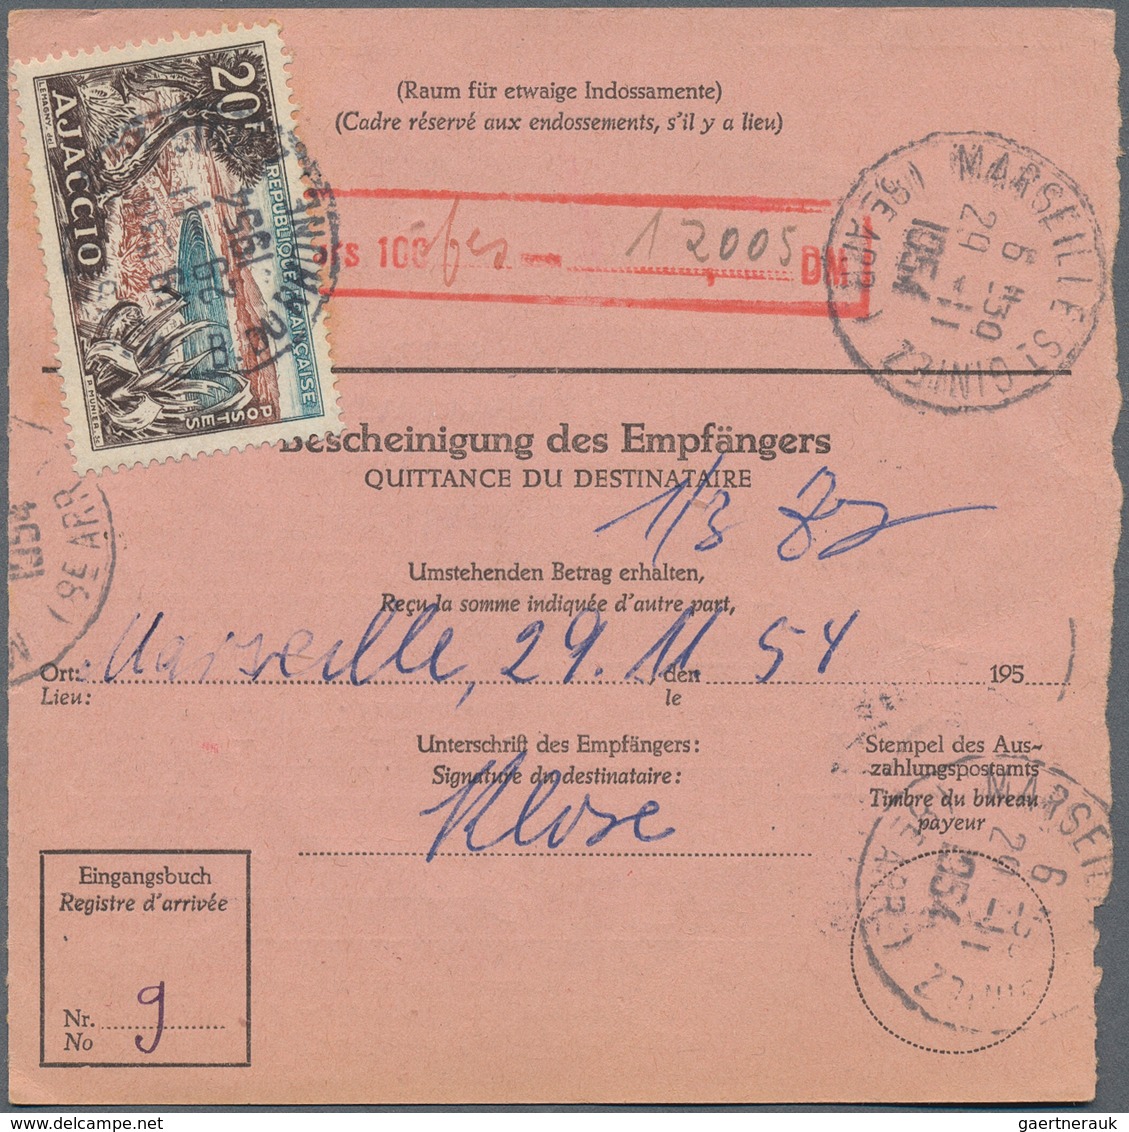 Bundesrepublik Deutschland: 1950er. Lot Von 1000 Auslandspostanweisungen Und Postanweisungen Mit Pos - Sammlungen